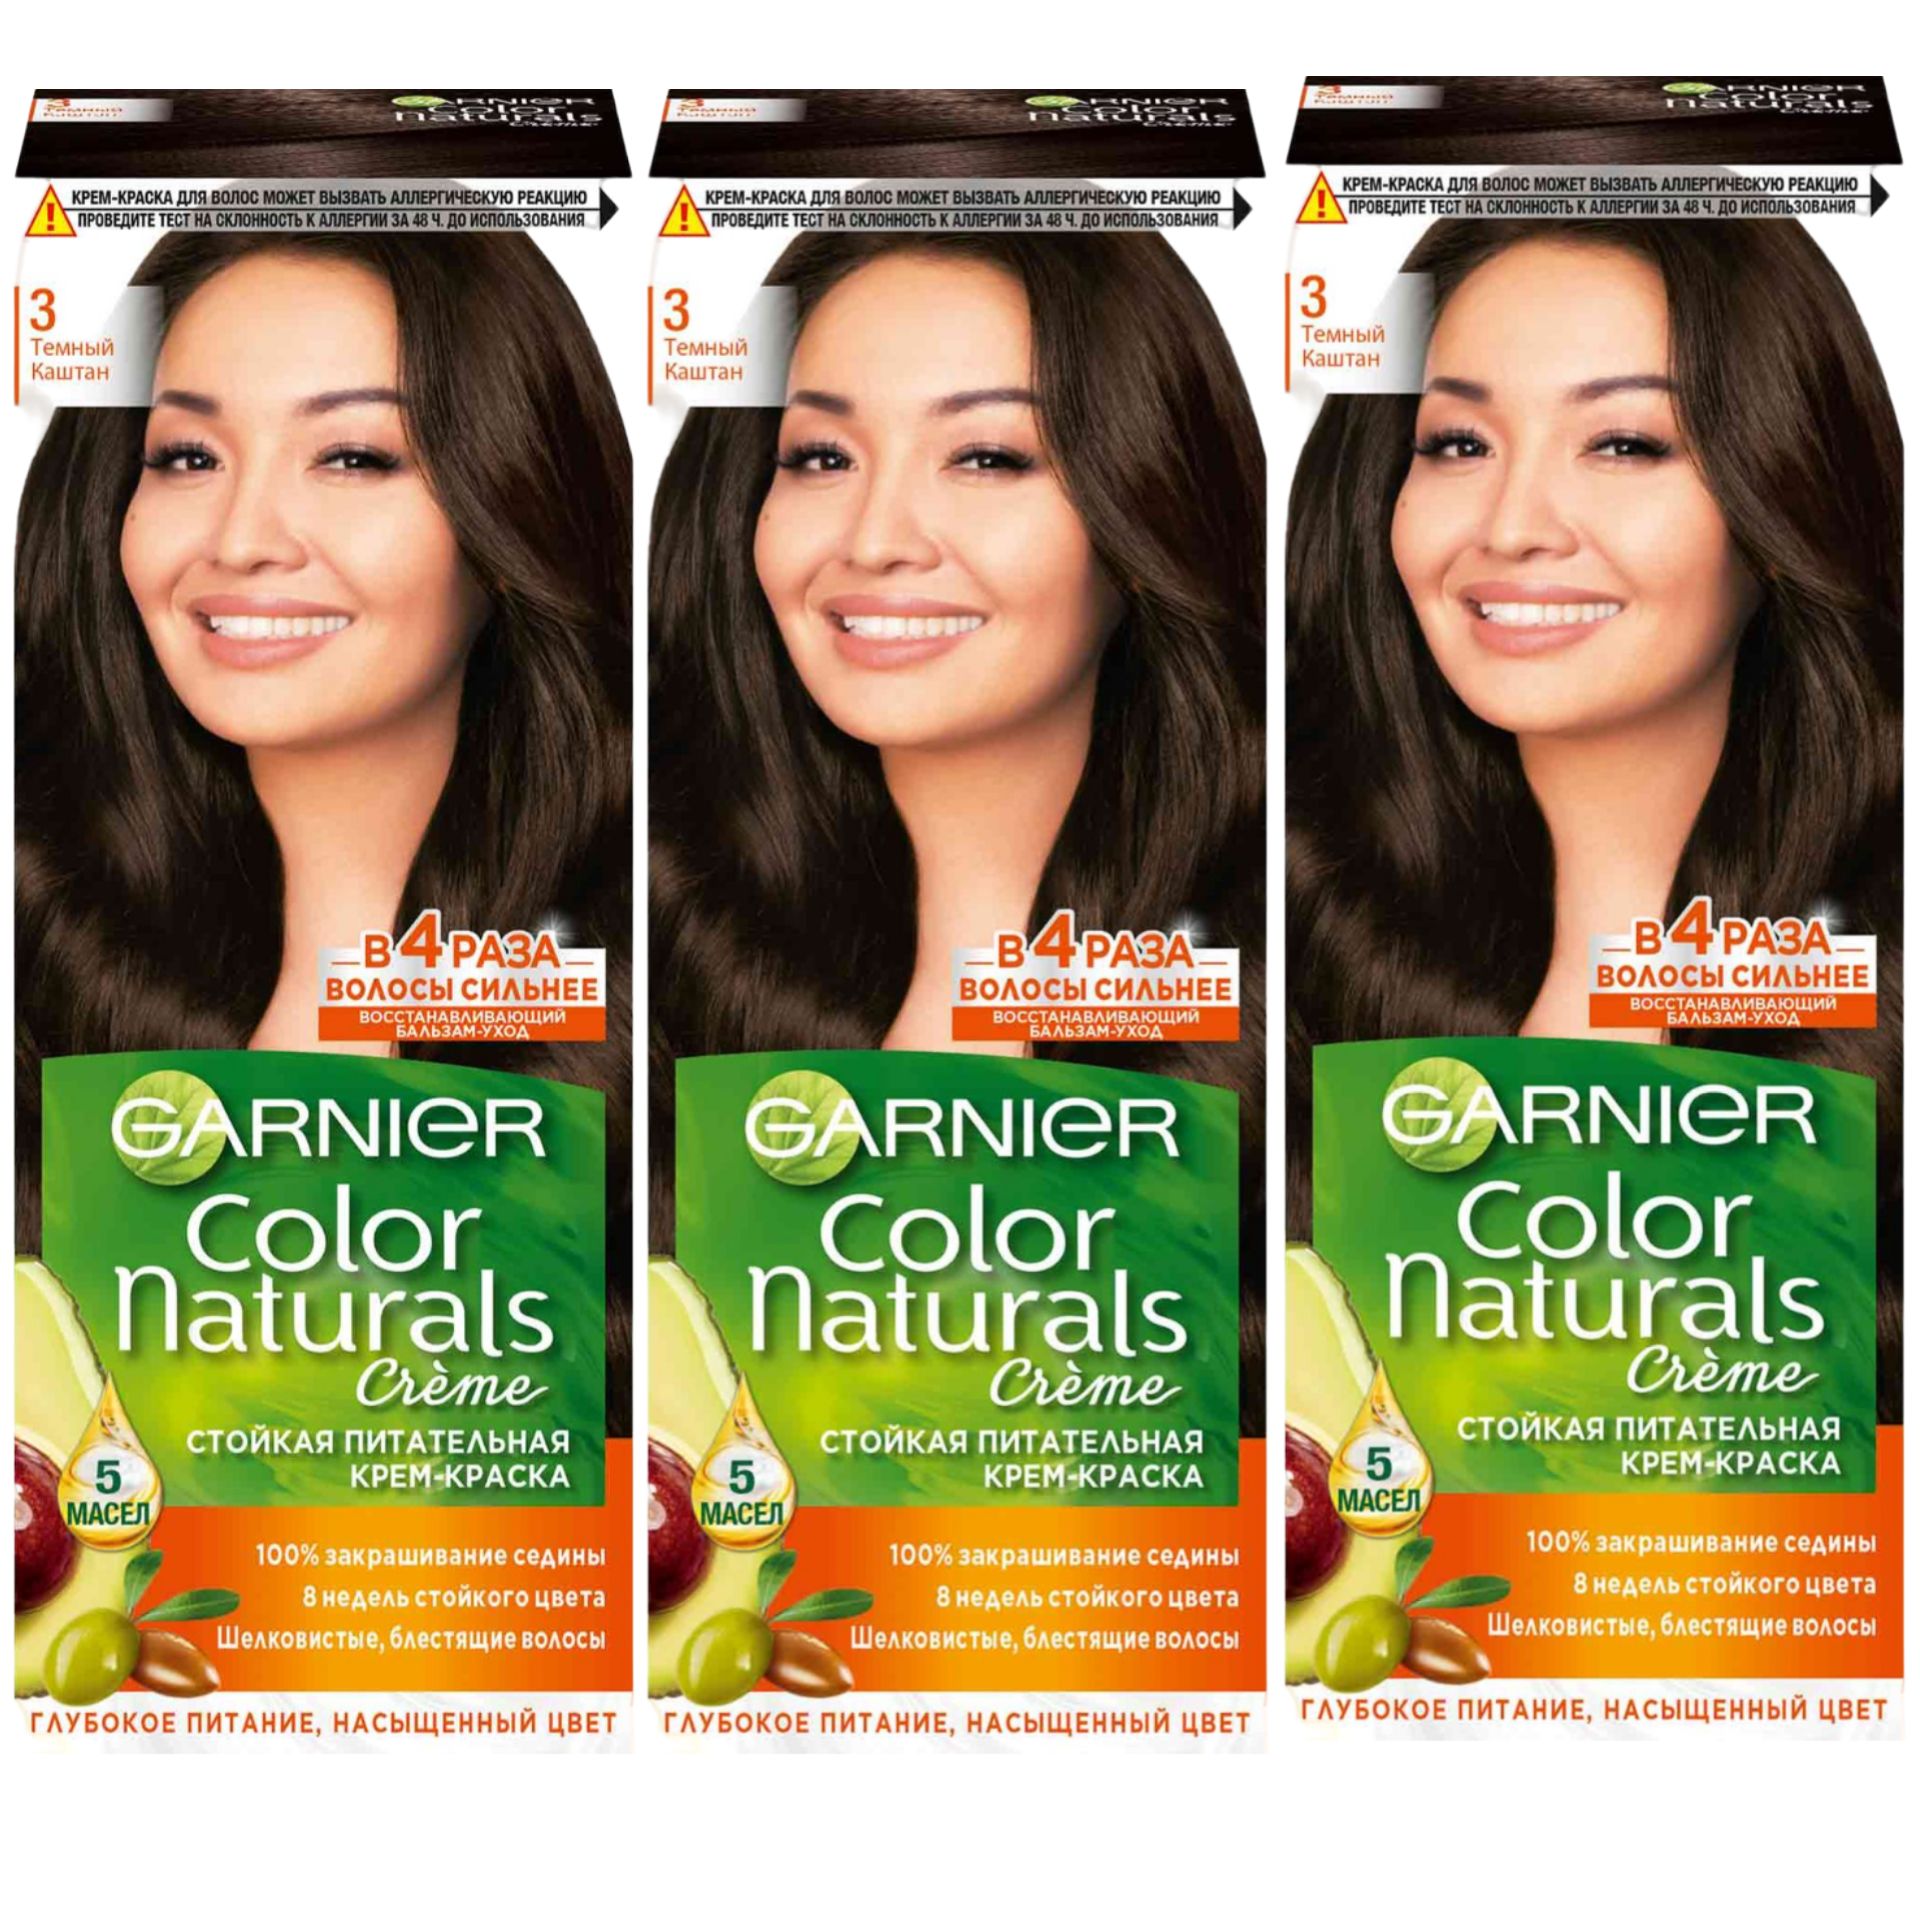 Гарньер 2.0. Garnier Color naturals краска для волос, 3 тёмный каштан 110мл. Краска для волос Color naturals 3 темный каштан. Краска гарньер натуралс 6.0. Color naturals краска для волос отзывы